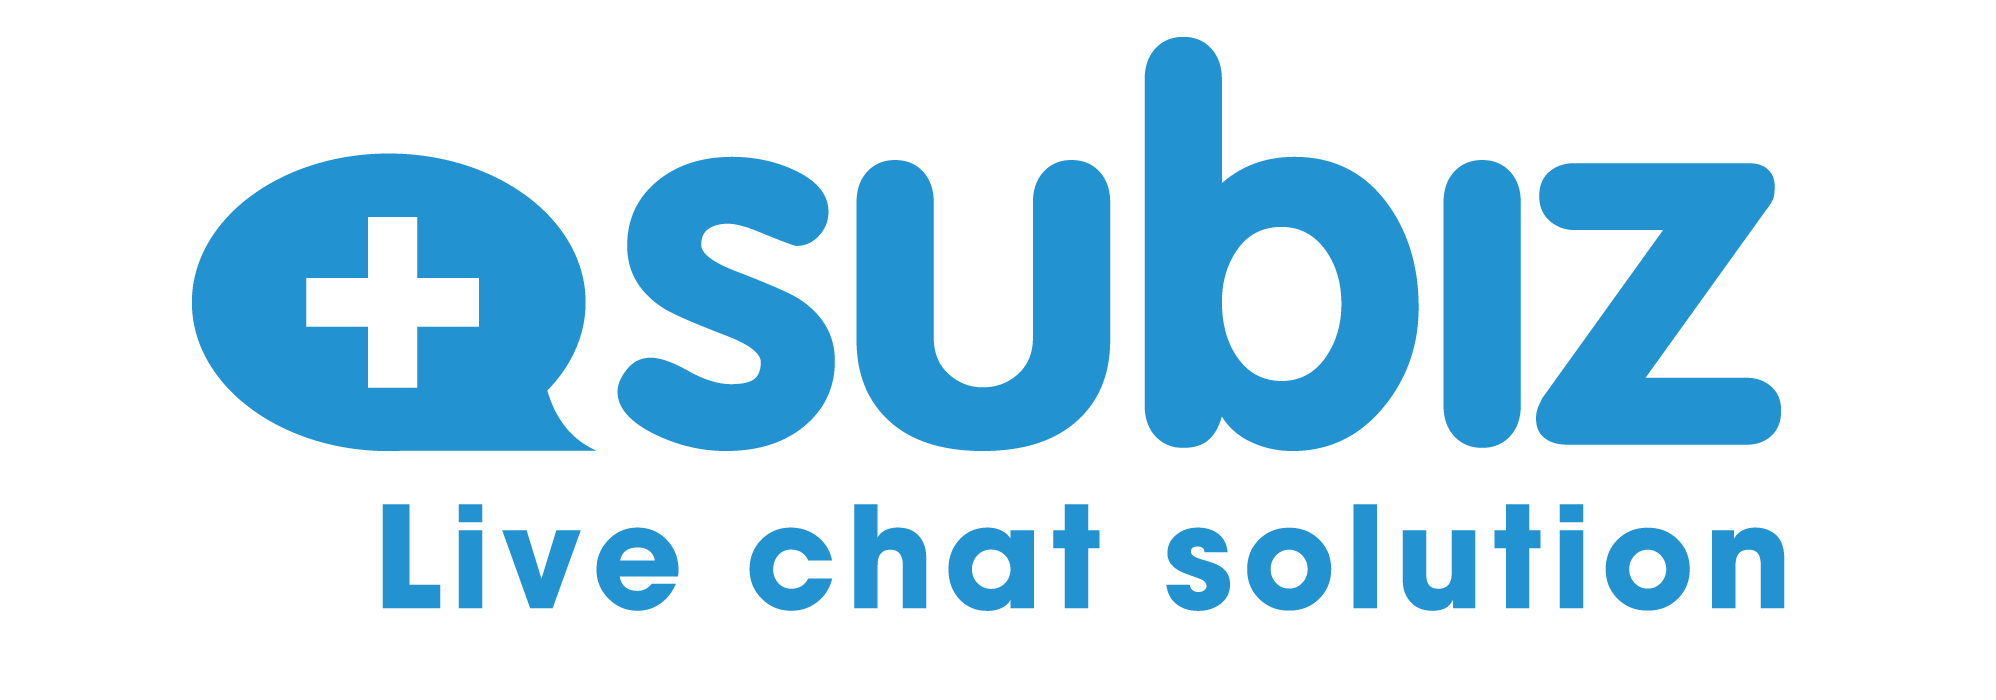 Chat trực tuyến - cần thiết cho website bán hàng - Subiz Blog